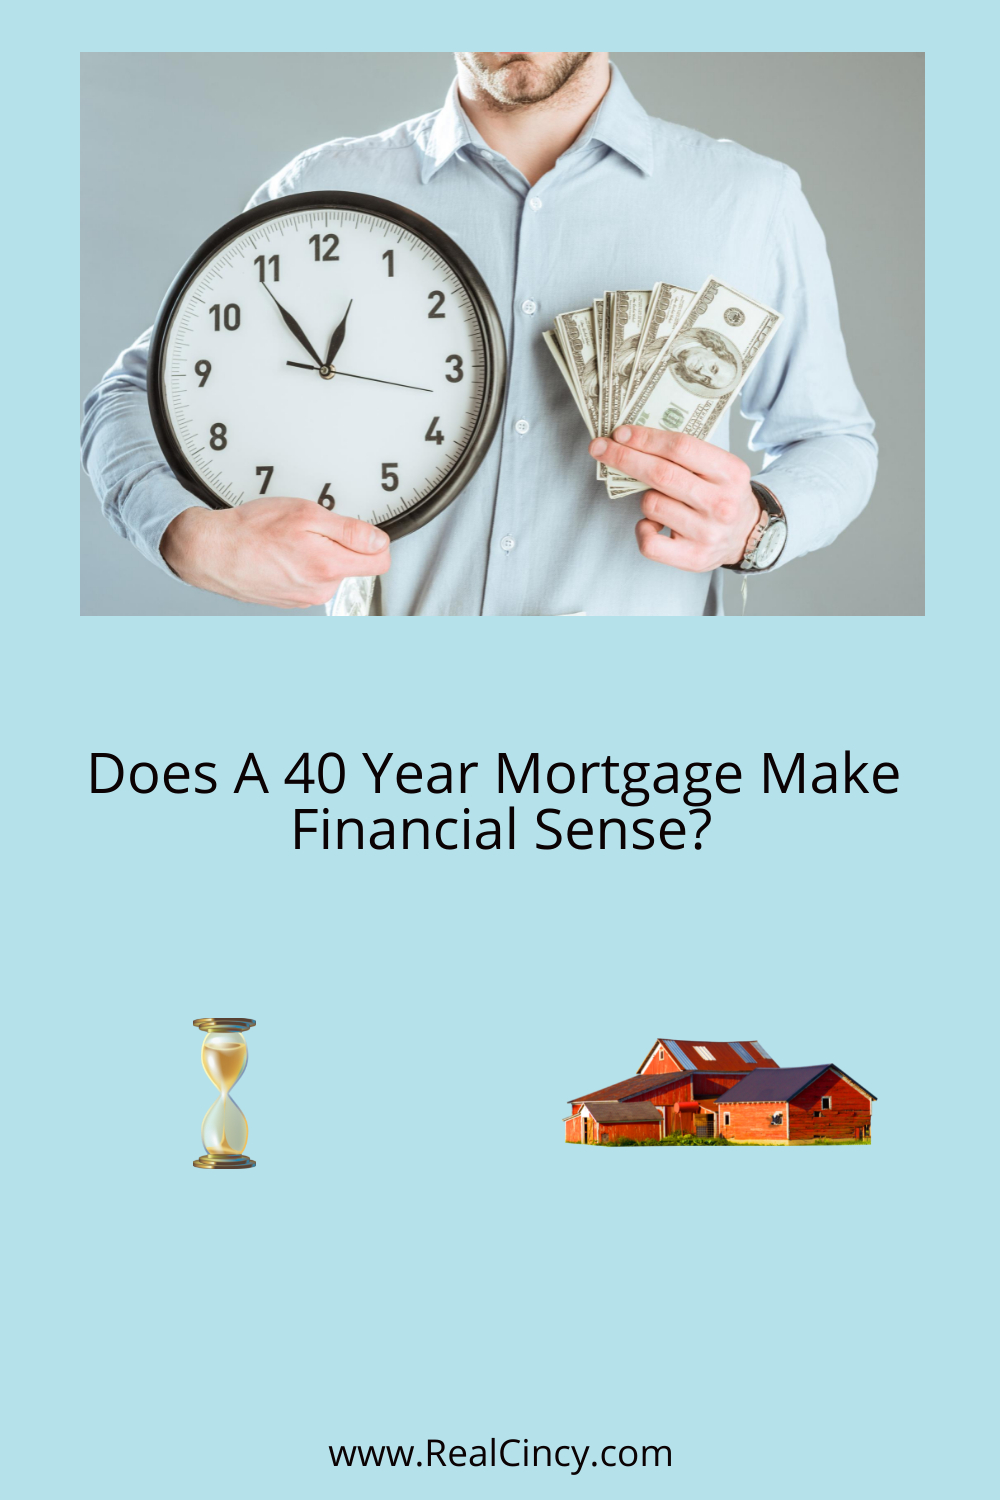 Does A 40 Year Mortgage Make Financial Sense?